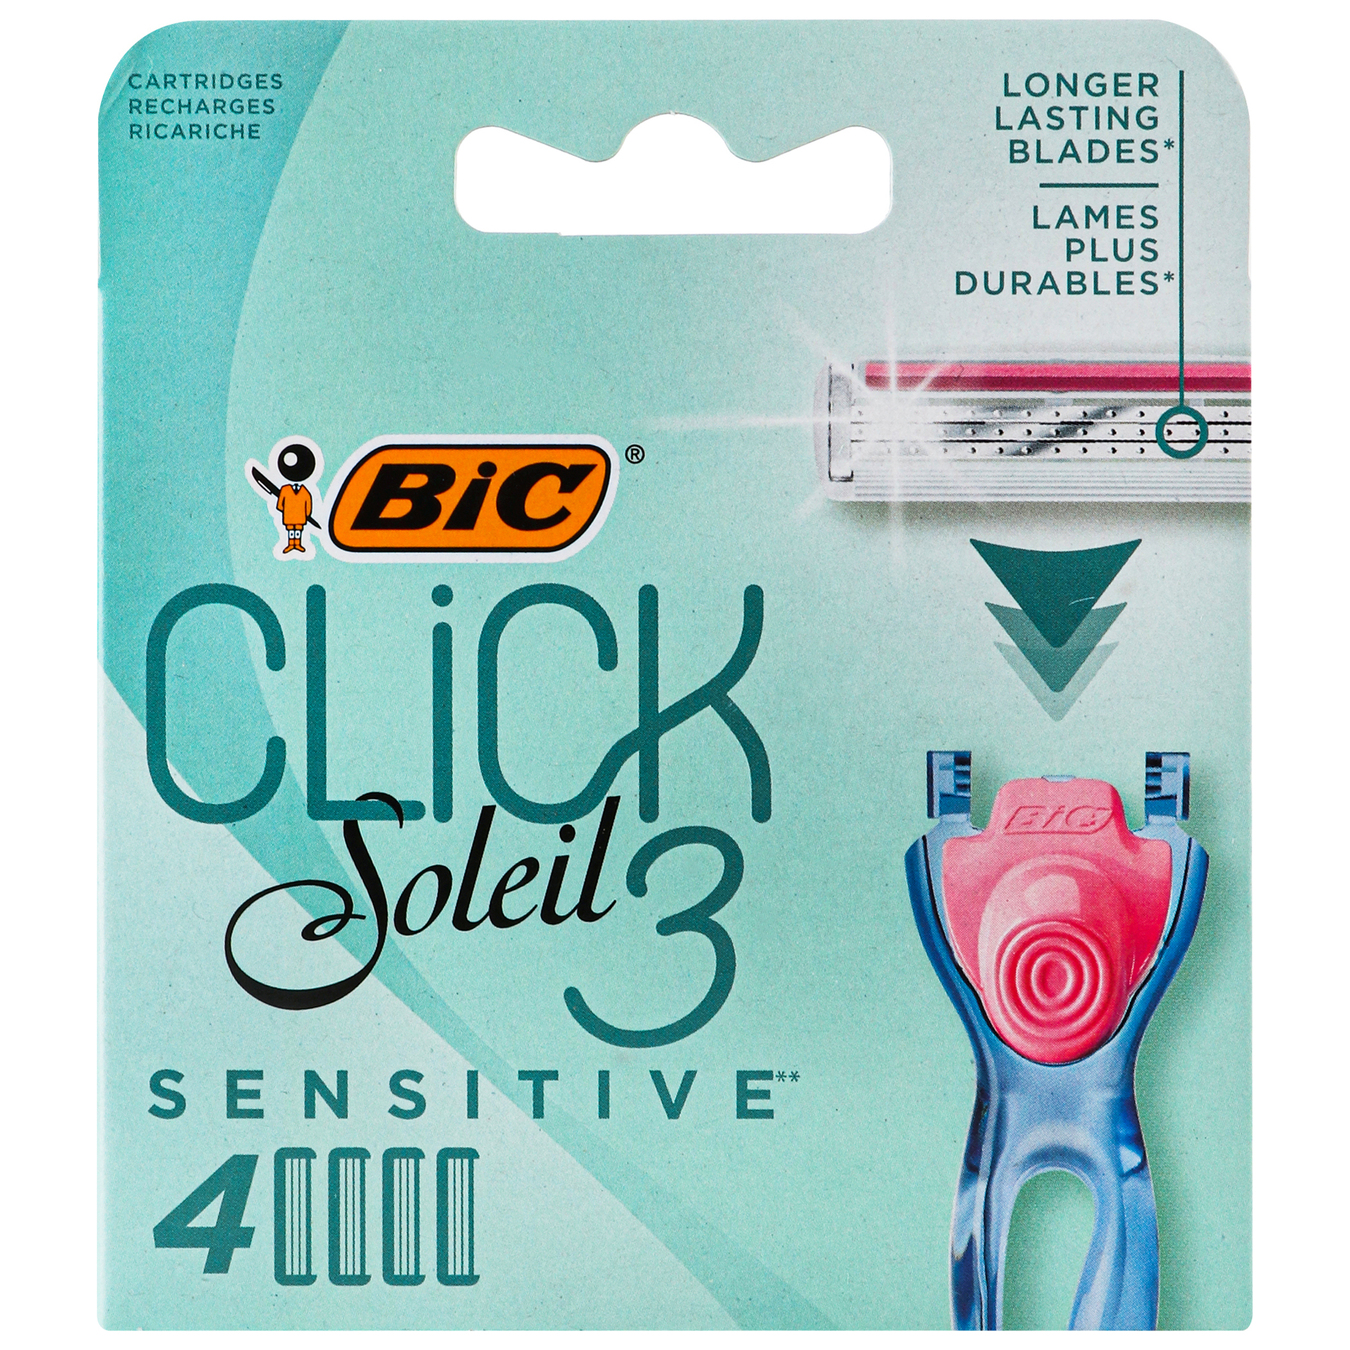 Сменные кассеты BIC Click Soleil 3 для бритья женские 4 шт